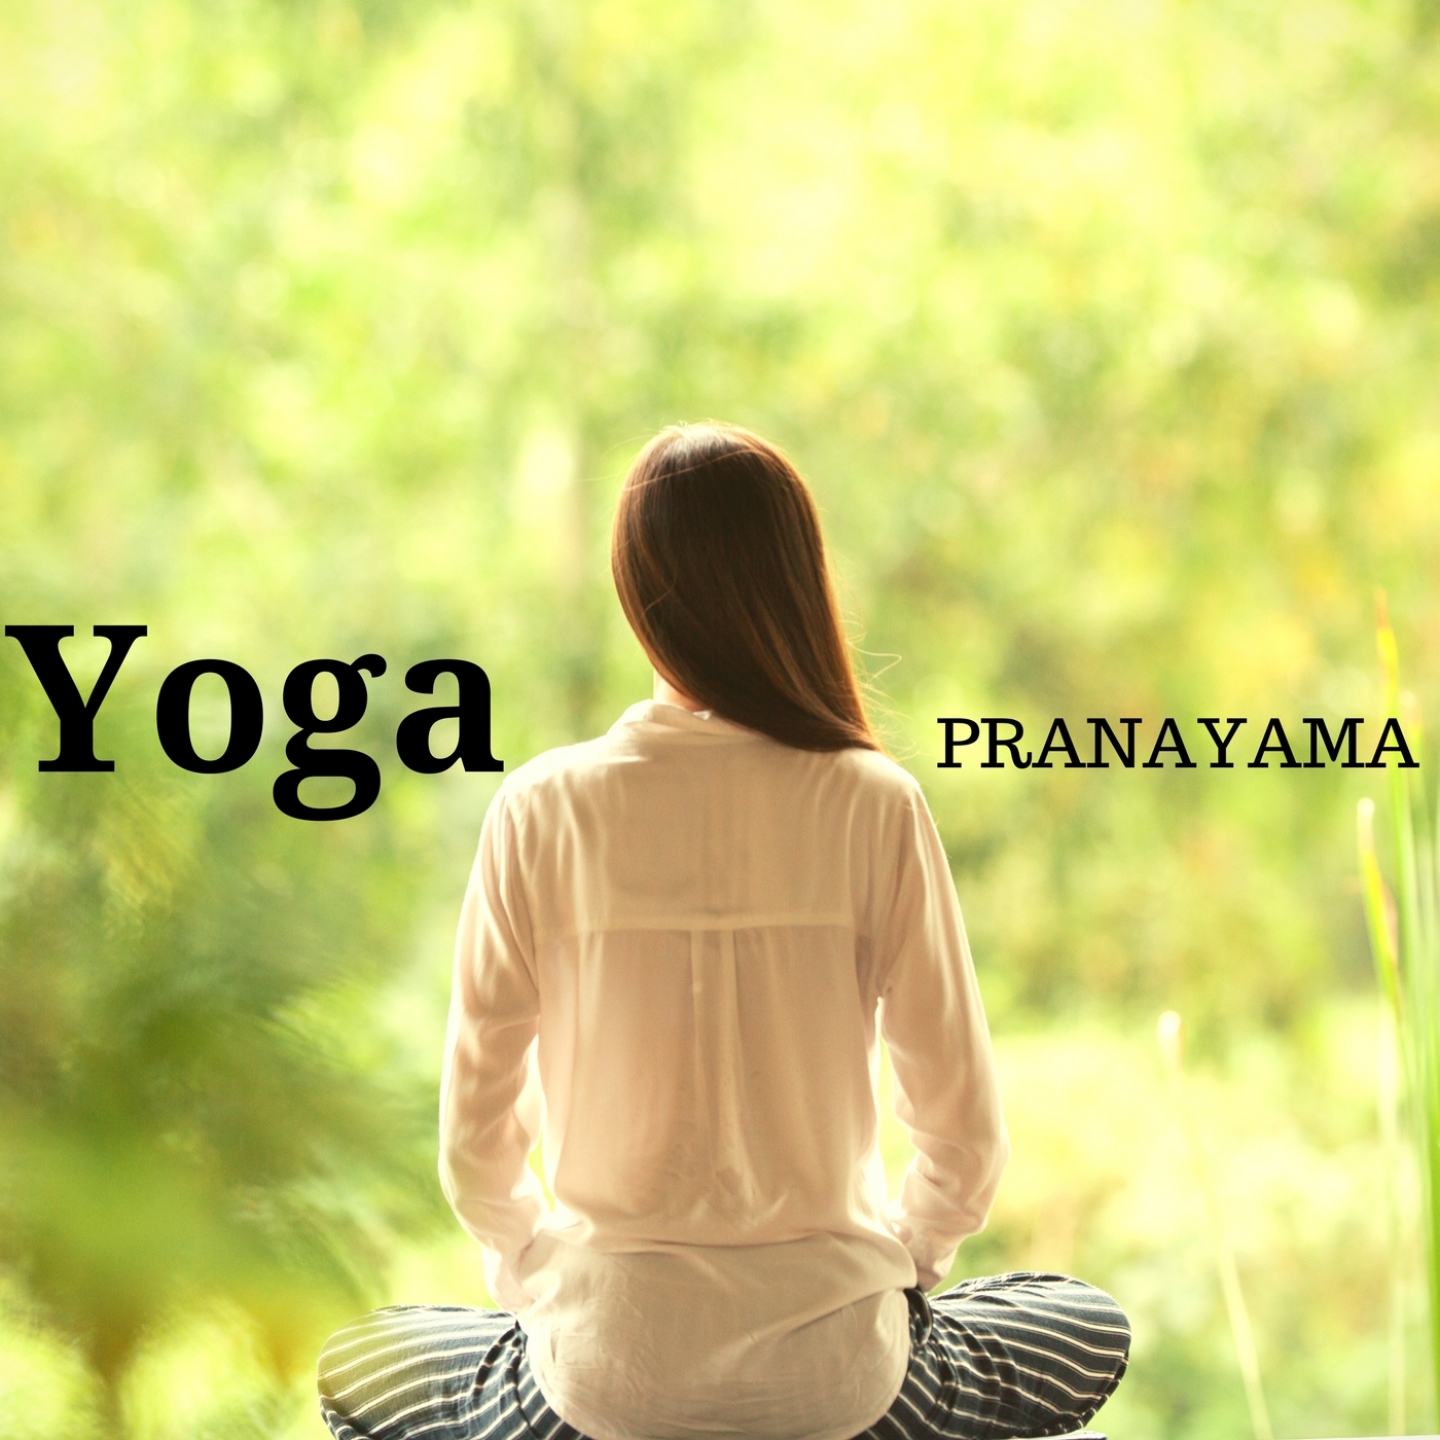 Pranayama Yoga: Music for Pranayama